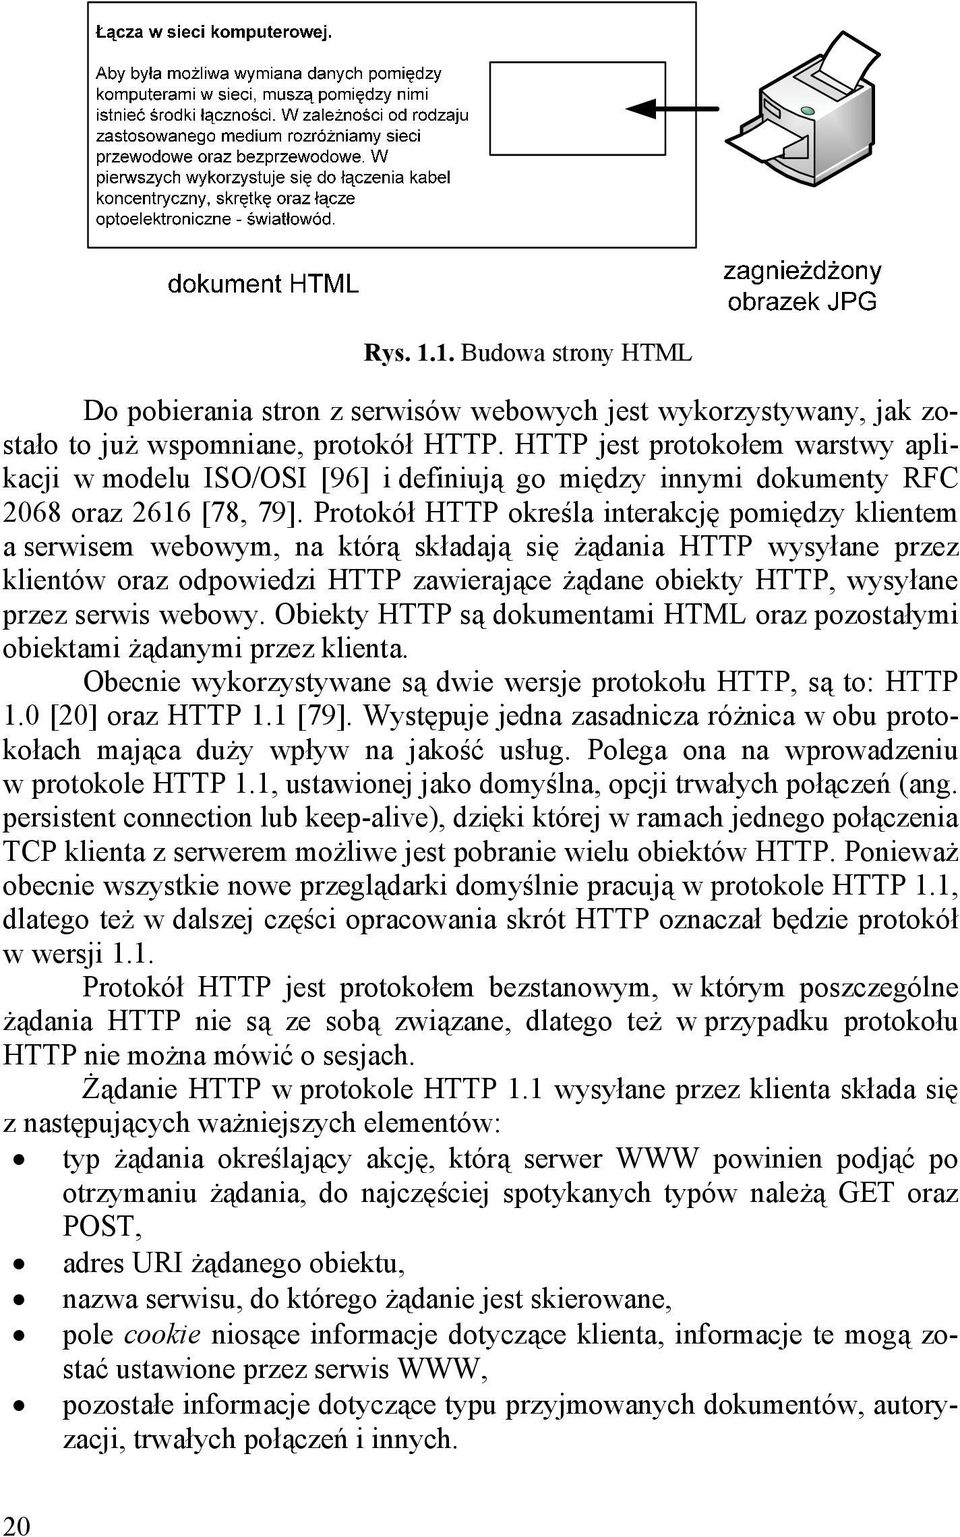 Protokół HTTP określa nterakcję pomędzy klentem a erwem webowym, na którą kładają ę żądana HTTP wyyłane przez klentów oraz odpowedz HTTP zawerające żądane obekty HTTP, wyyłane przez erw webowy.